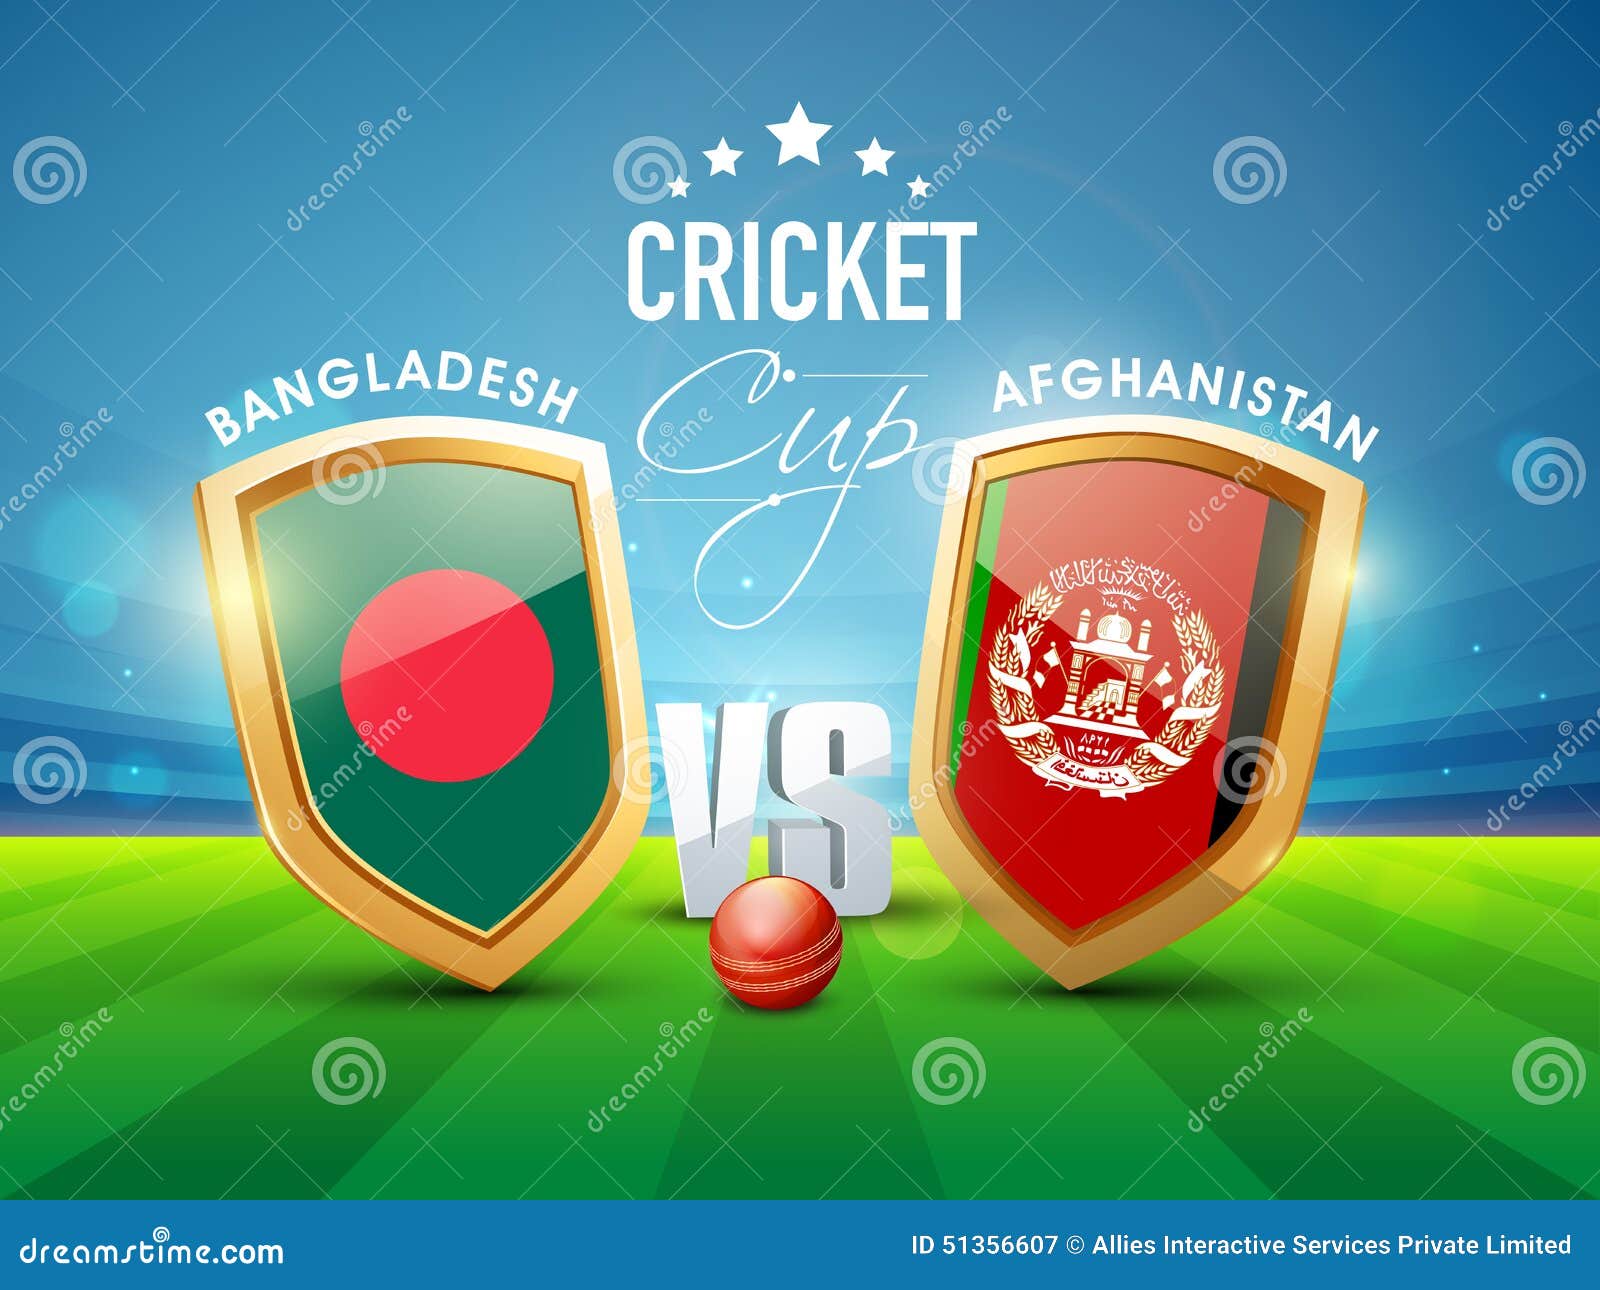 Bangladesh vs afghanistan